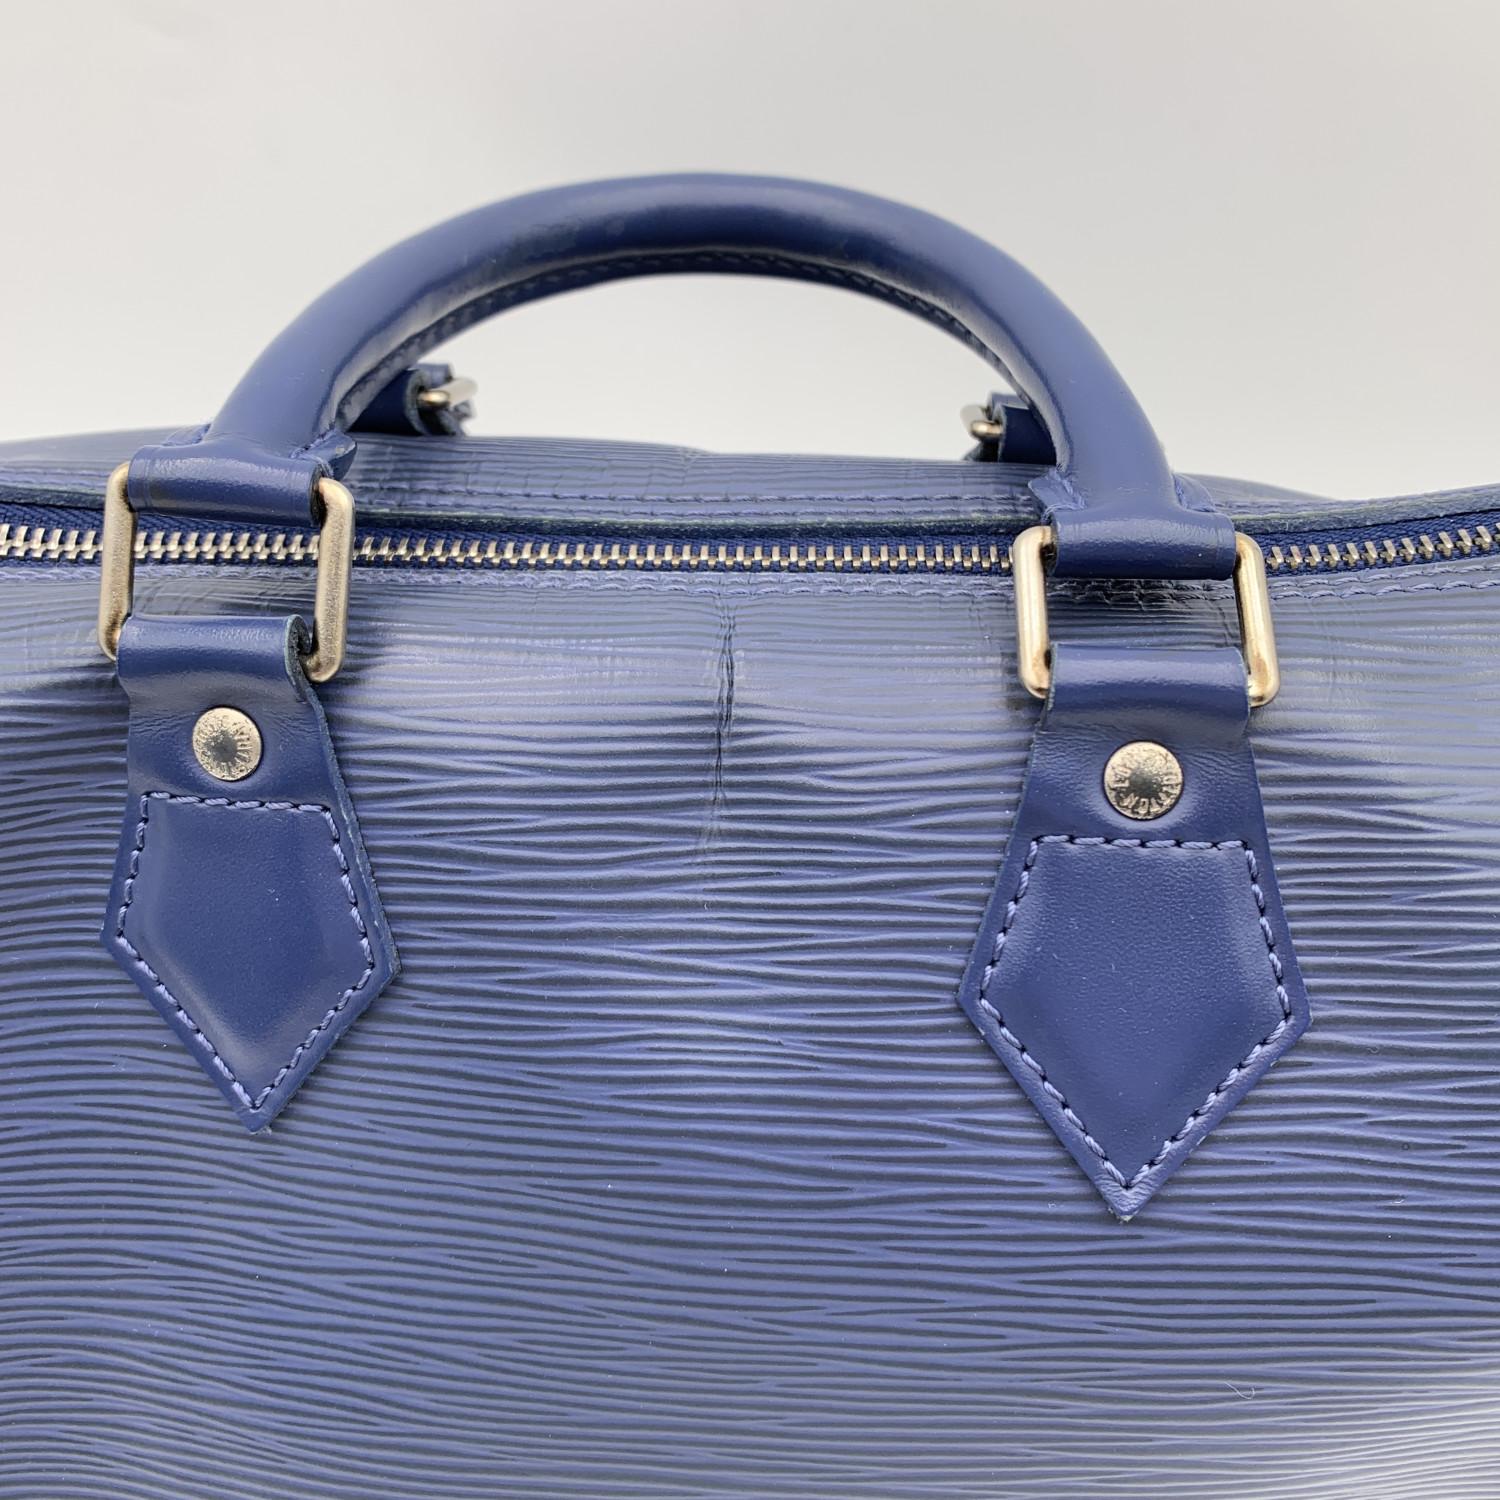 Louis Vuitton Toledo Blue Epi Leather Speedy 25 Boston Bag Handbag 7